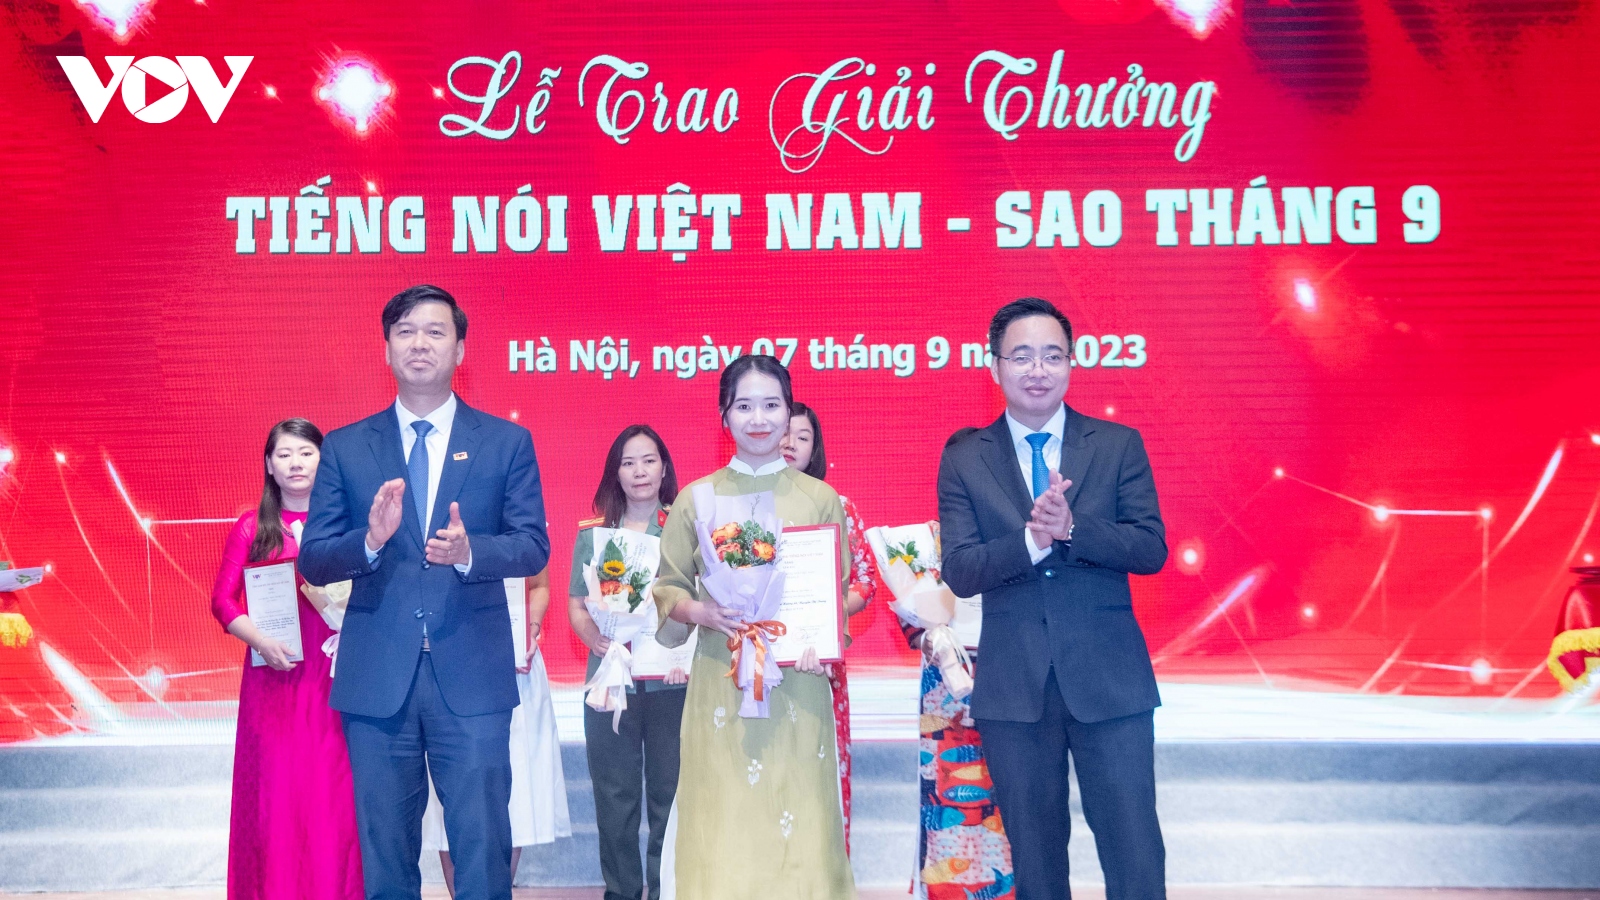 “Sao tháng 9” vinh danh những đóng góp cho thương hiệu “Tiếng nói Việt Nam”